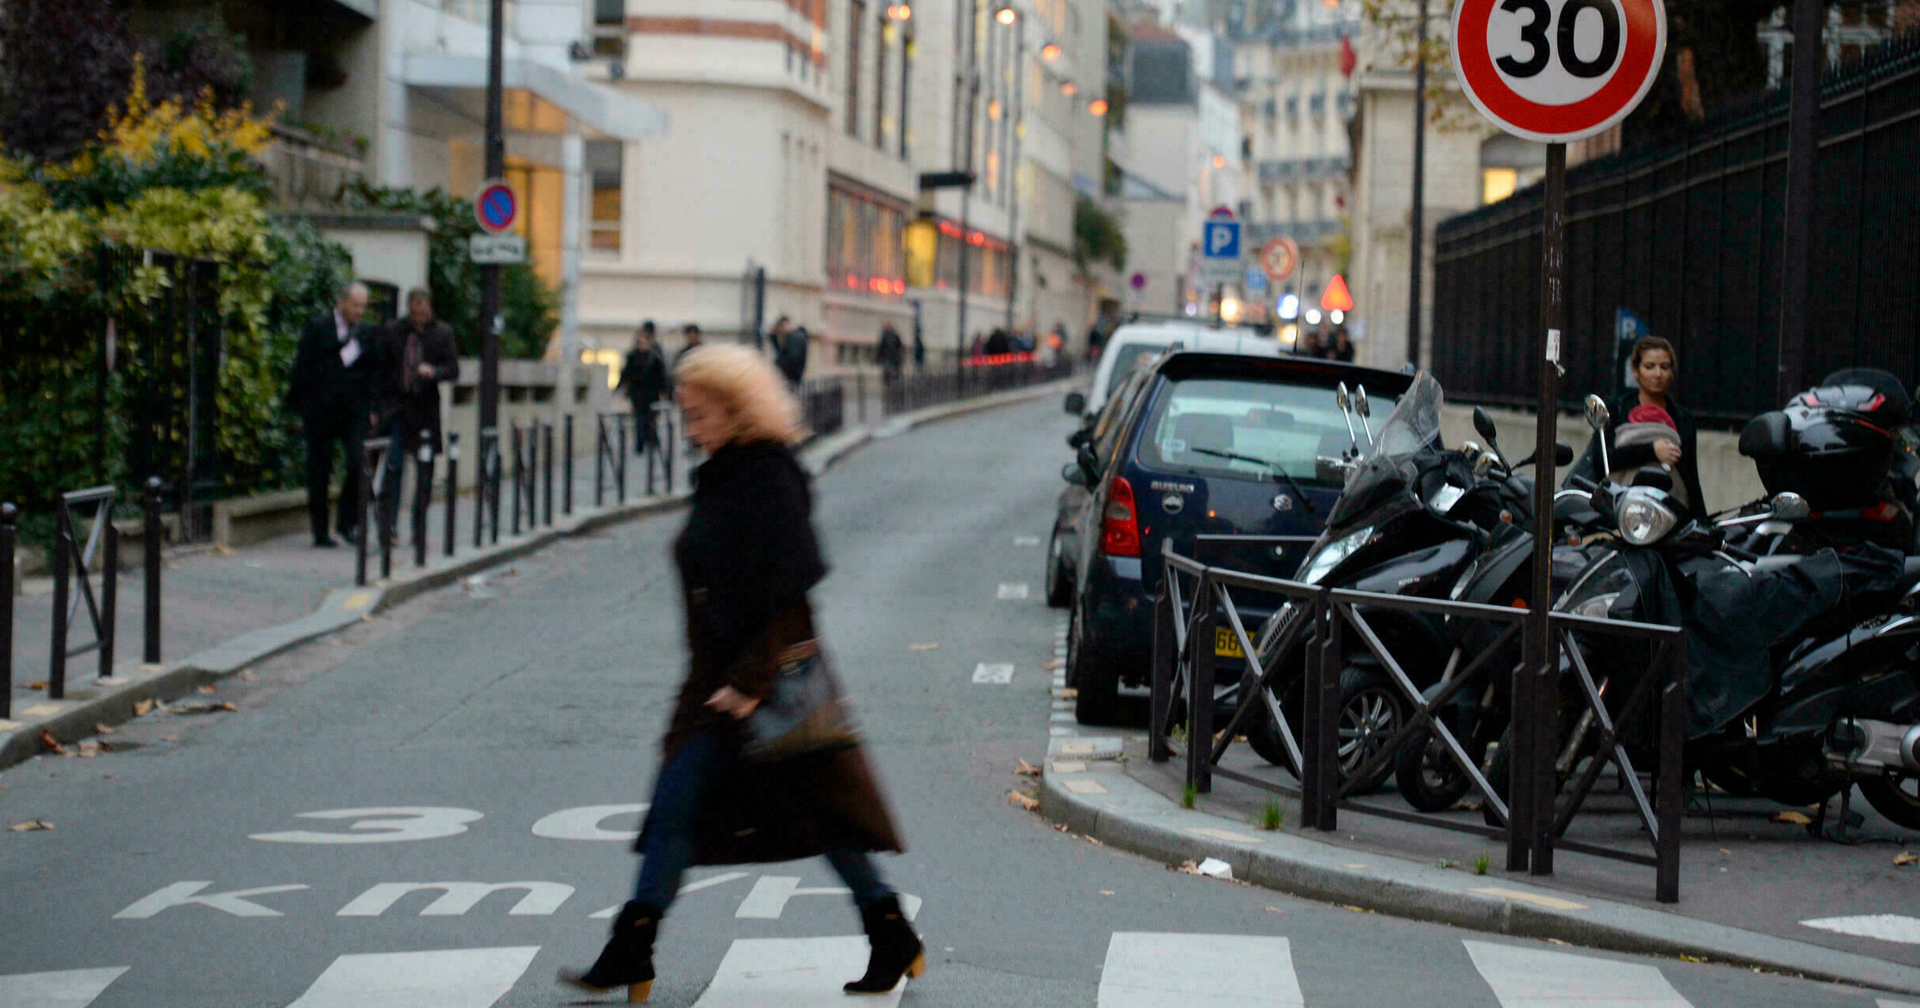 ปารีสออกกฎจำกัดความเร็วขับขี่ไม่เกิน 30 กม./ชม. หวังลดมลพิษและเพิ่มความปลอดภัย